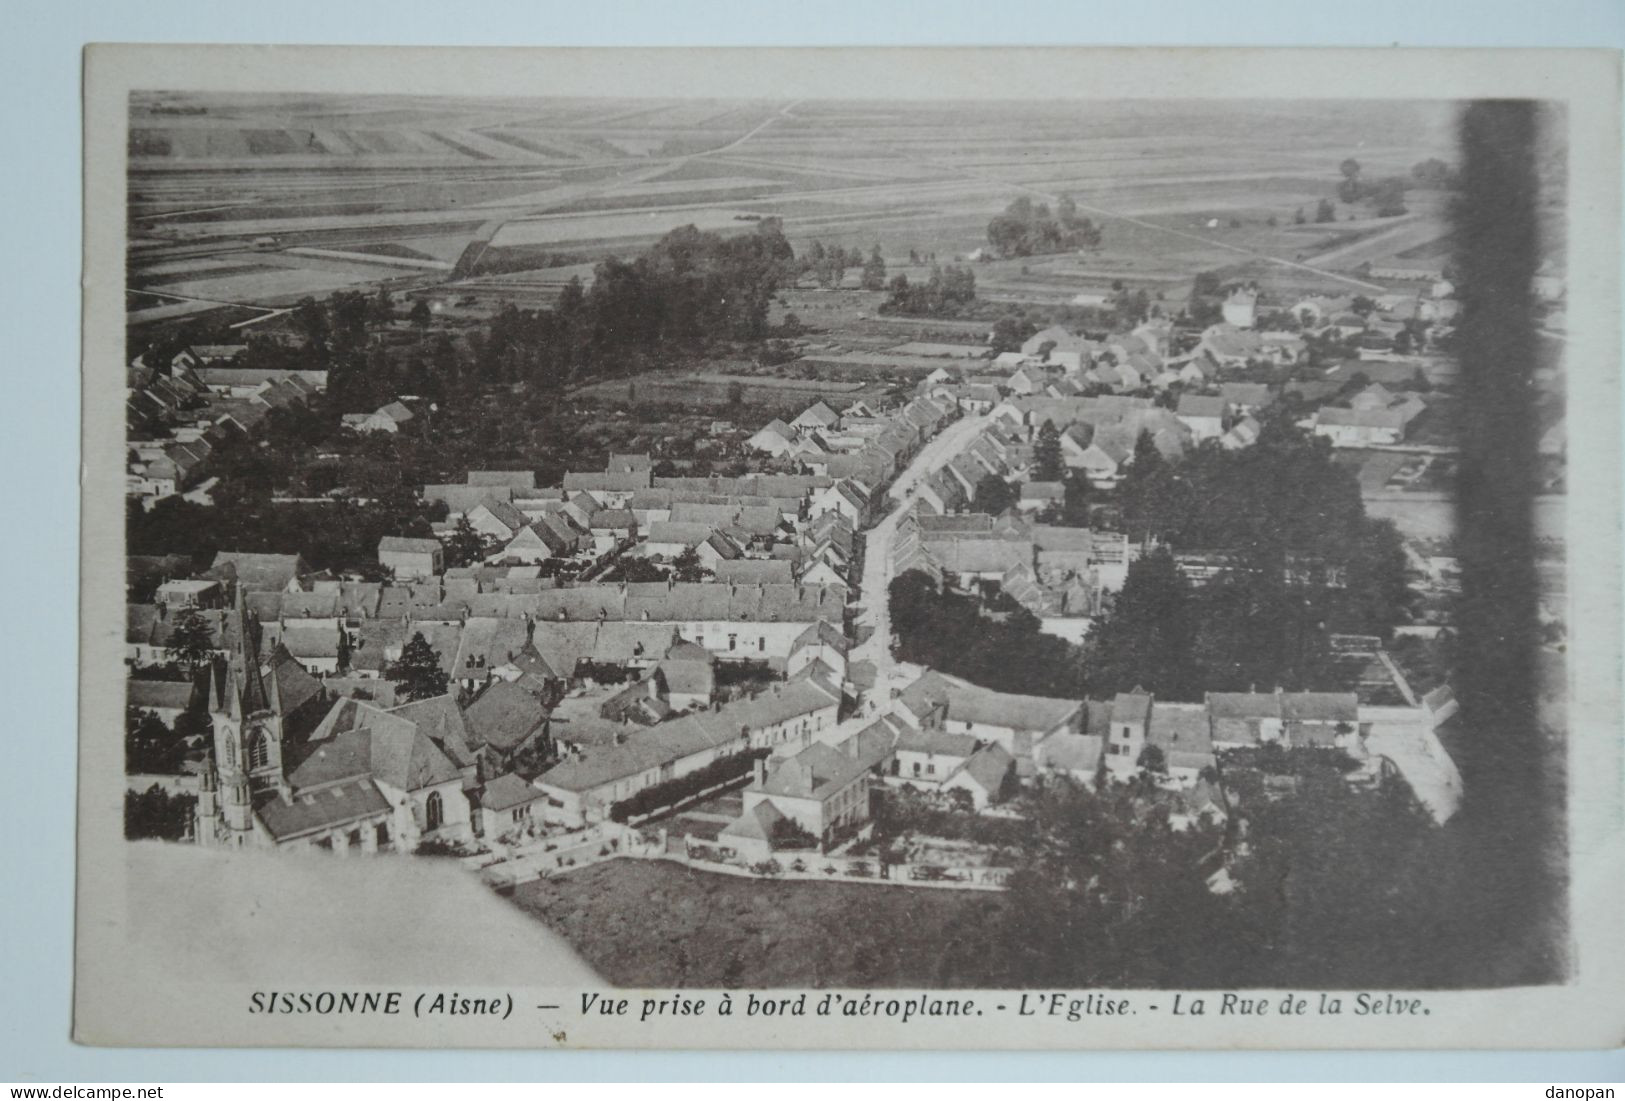 Lot 32 cpa 100% villages de France, vues panoramiques, vues générales - Petit prix de départ - BL55